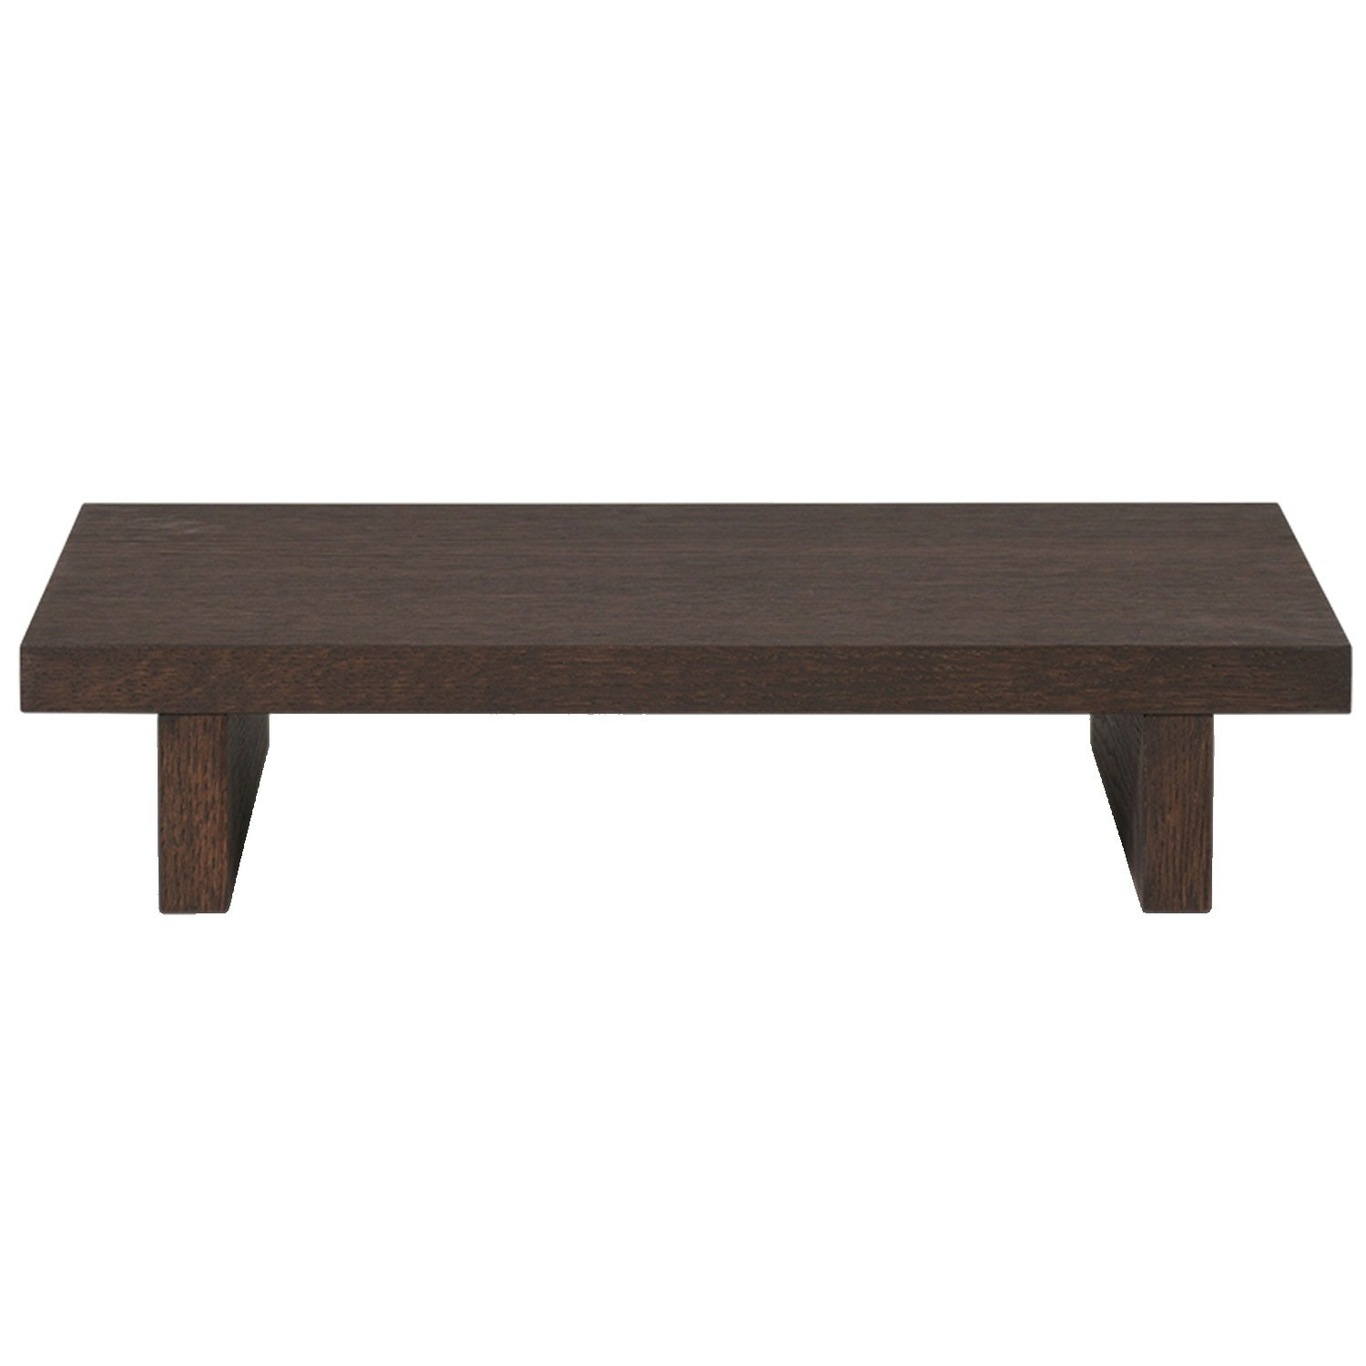 Kona Low Side Table 49 x 10 x 33.5 cm, Dark Stained